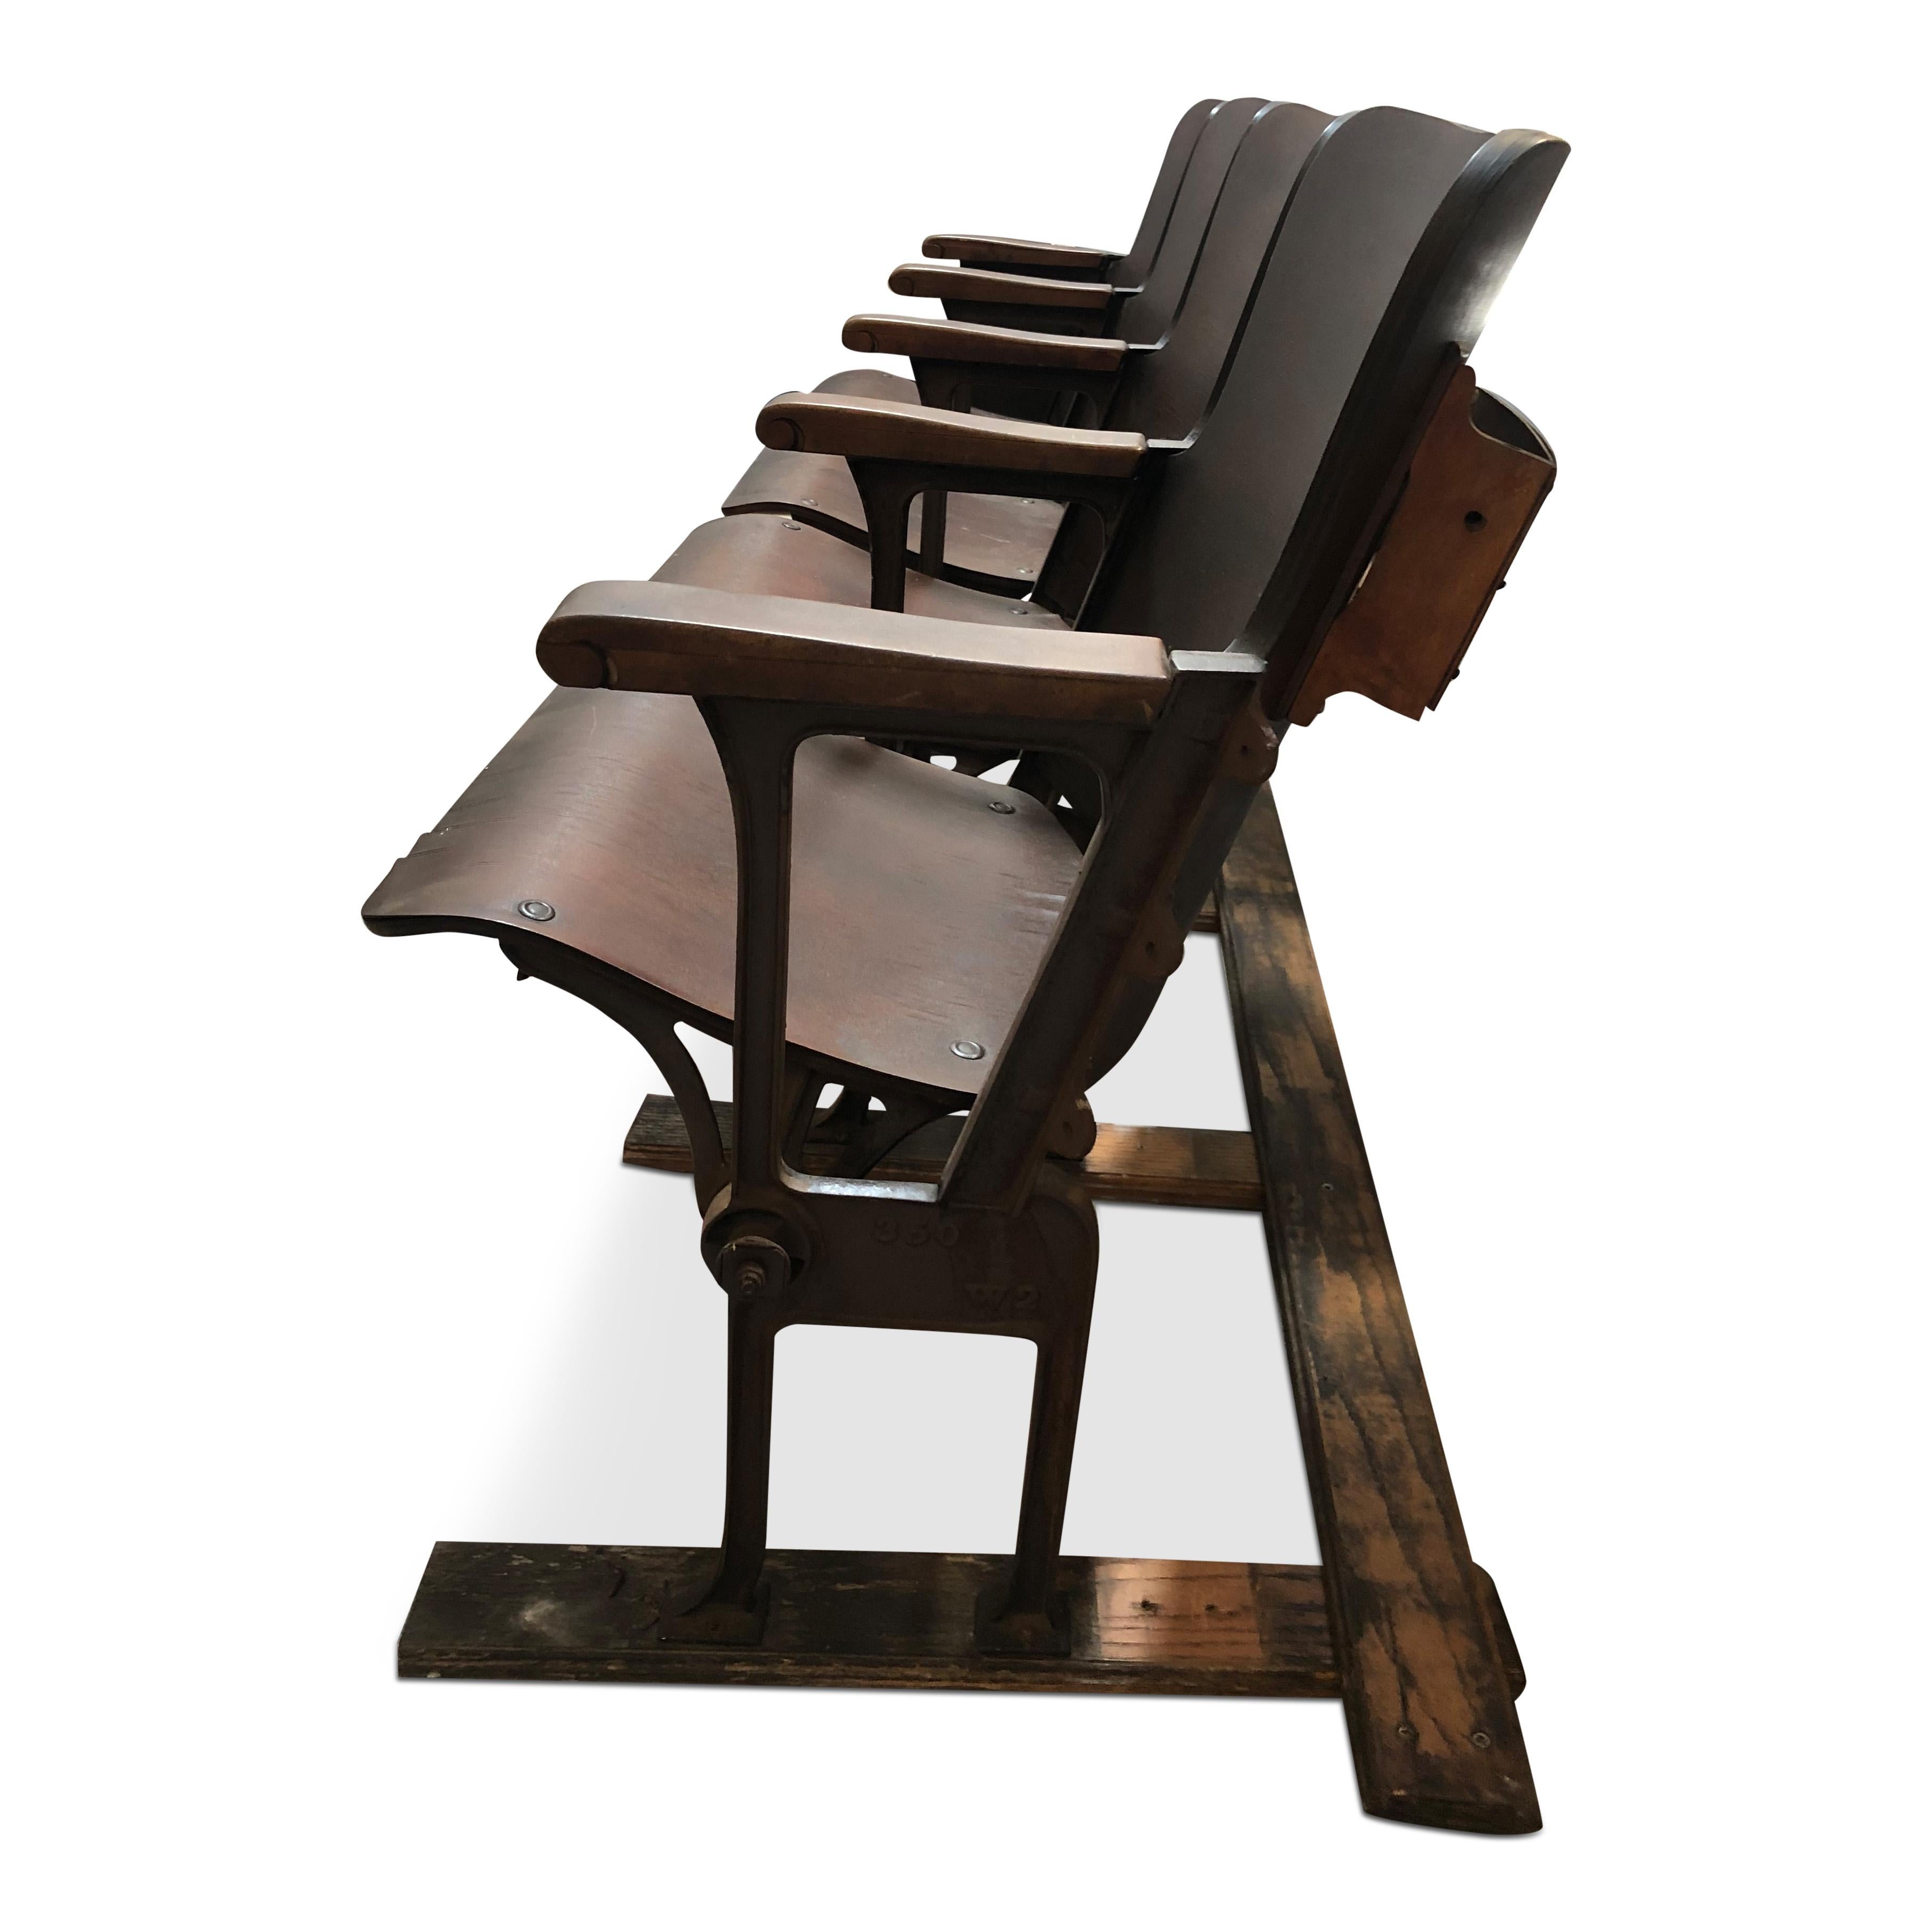 Diese Theatersitze im Industriestil sind aus gebogenem Sperrholz gefertigt und die Armlehnen sind aus Massivholz. Die Struktur und die Sitzmechanik sind aus Stahl gefertigt. Die Sitze können hochgeklappt werden, und der Sockel kann entweder